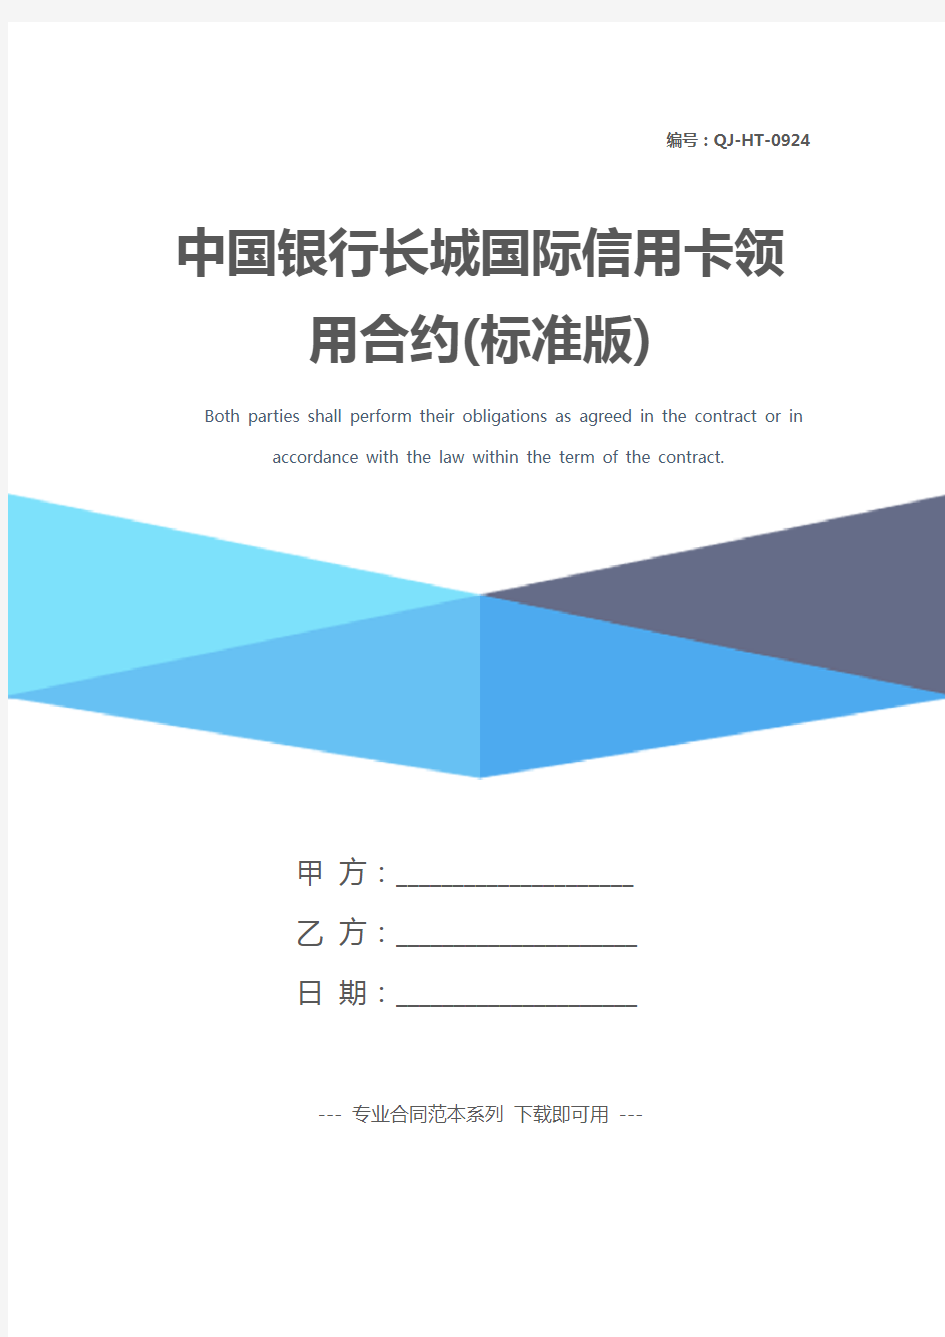 中国银行长城国际信用卡领用合约(标准版)